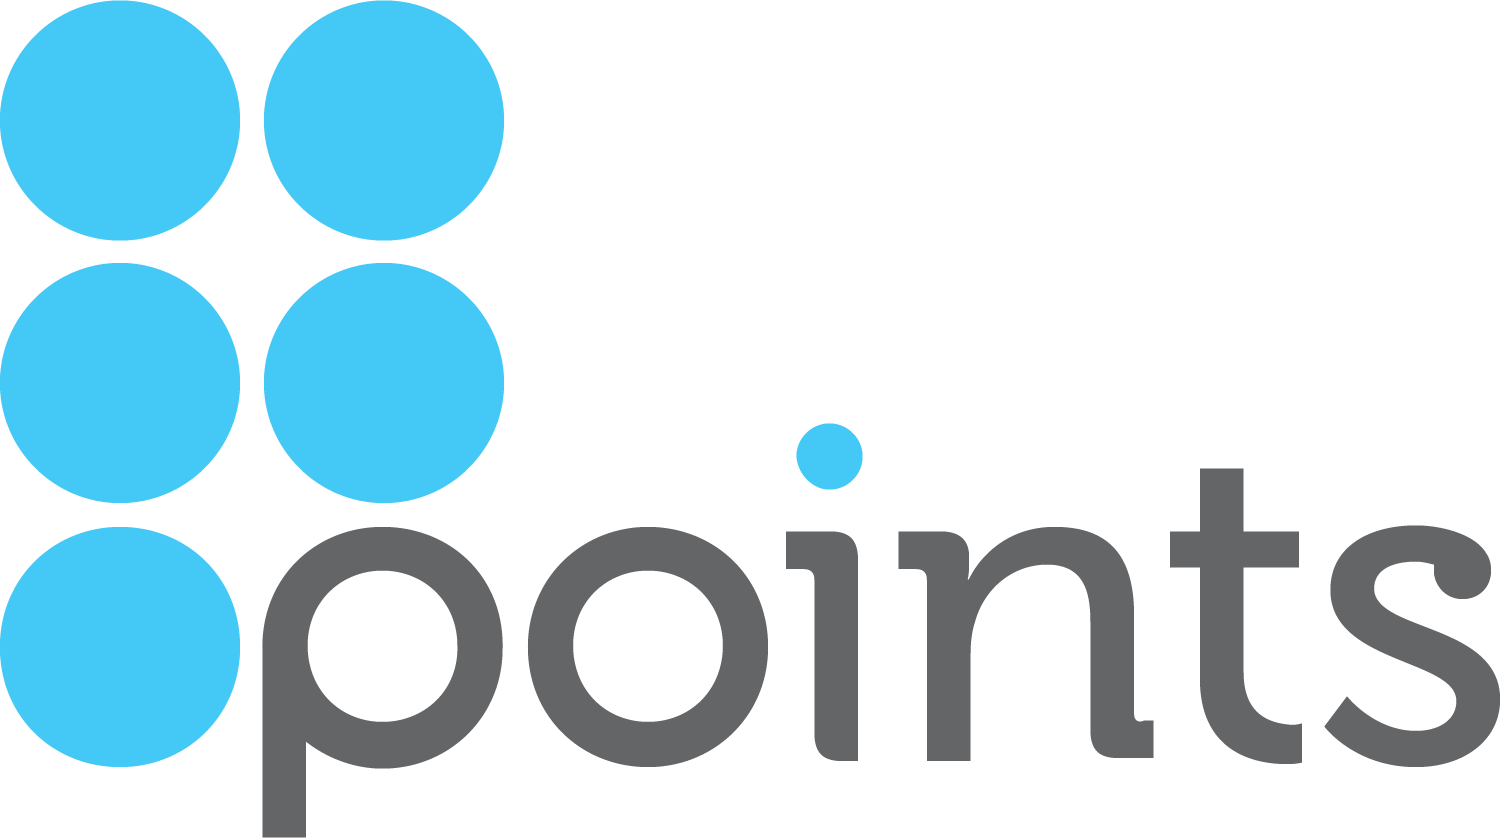 Points.com Logo